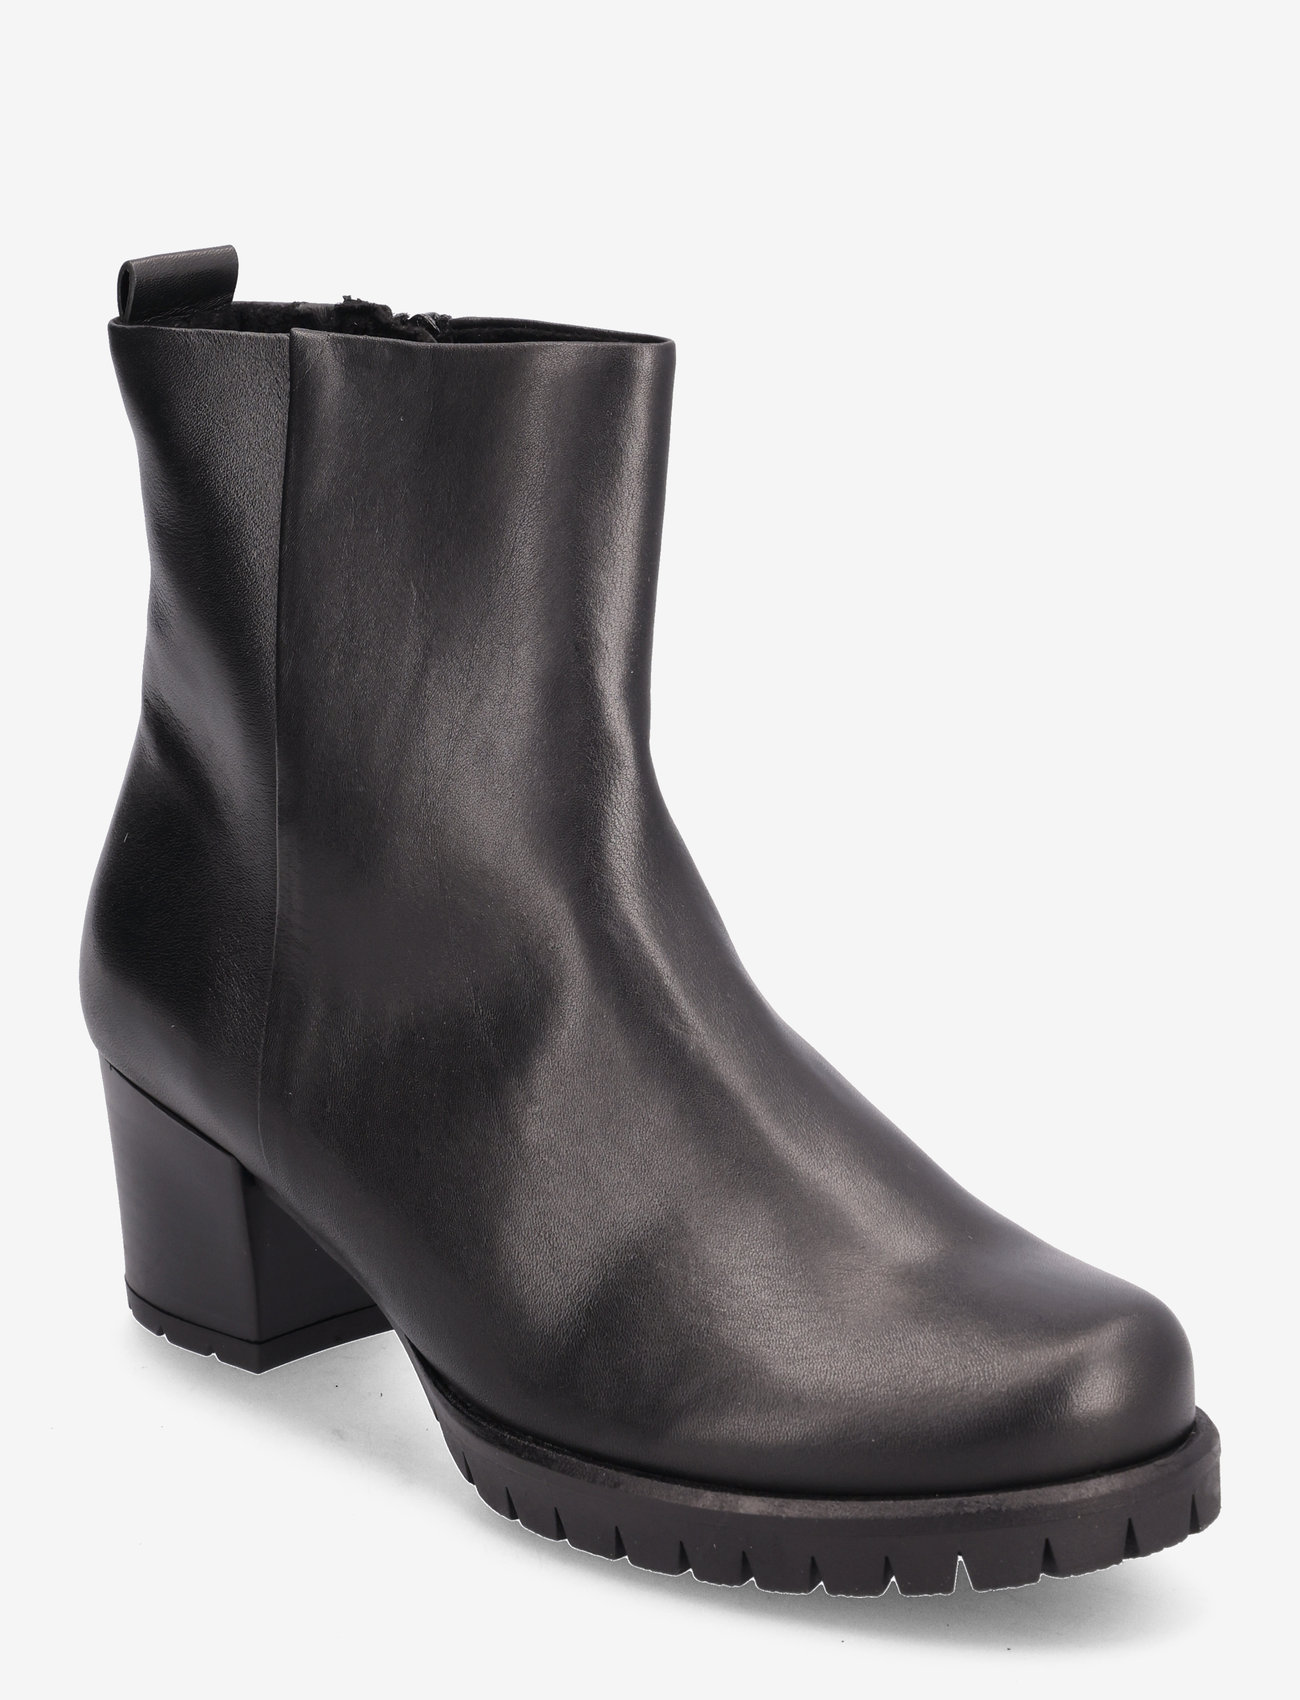 Gabor - Ankle boot - støvletter - black - 0